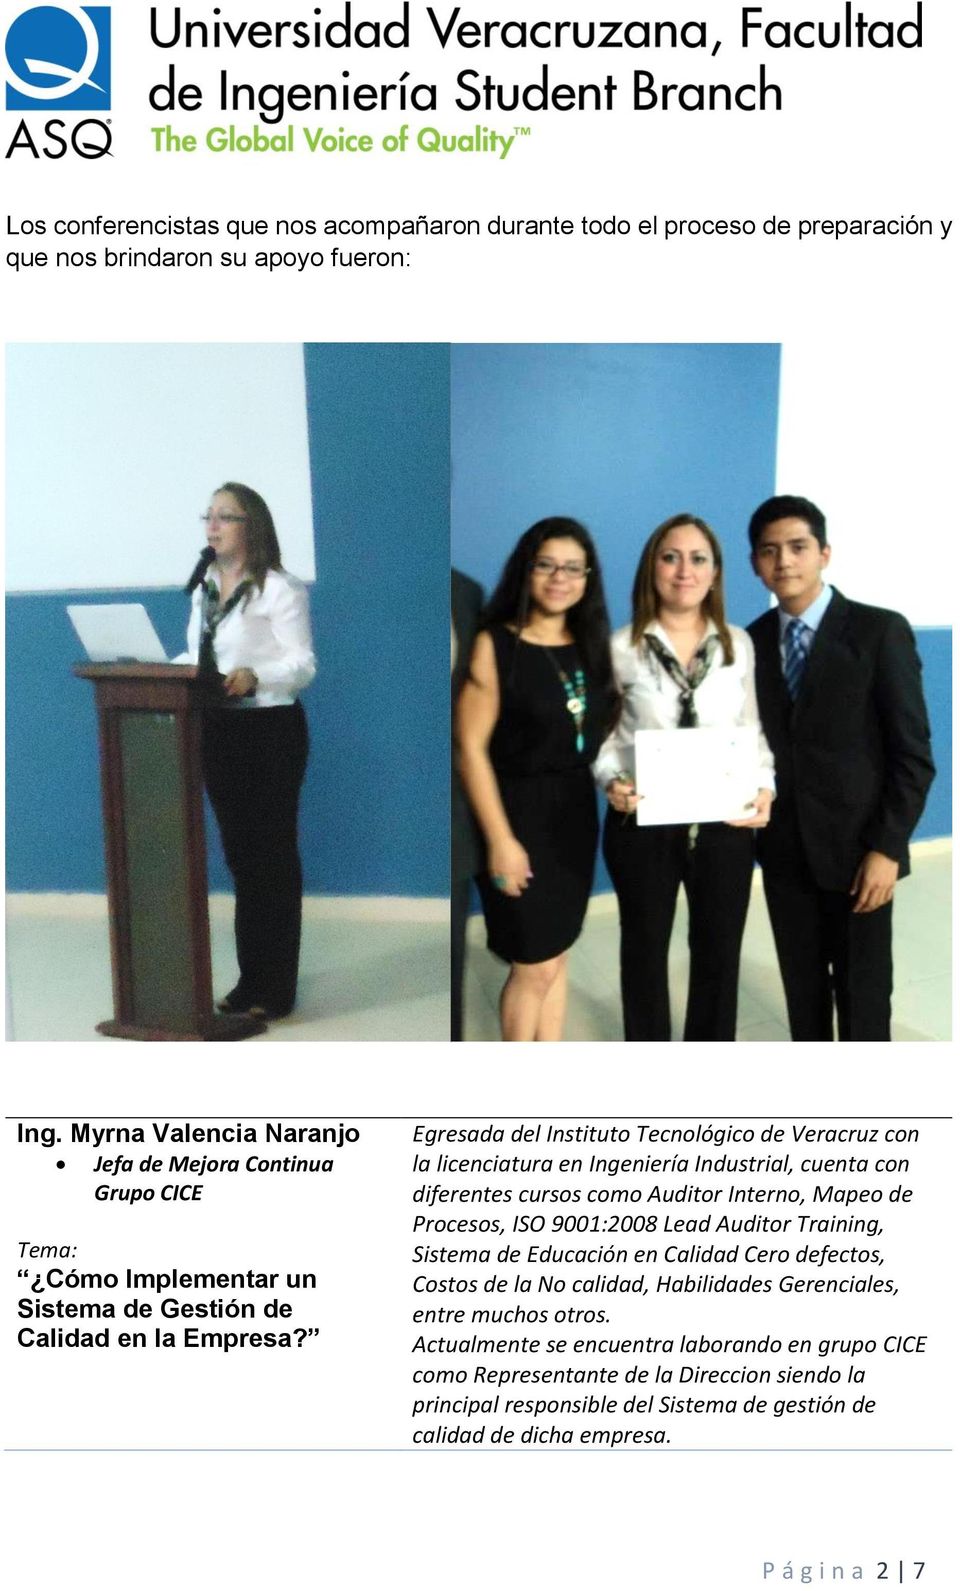 Egresada del Instituto Tecnológico de Veracruz con la licenciatura en Ingeniería Industrial, cuenta con diferentes cursos como Auditor Interno, Mapeo de Procesos, ISO 9001:2008 Lead